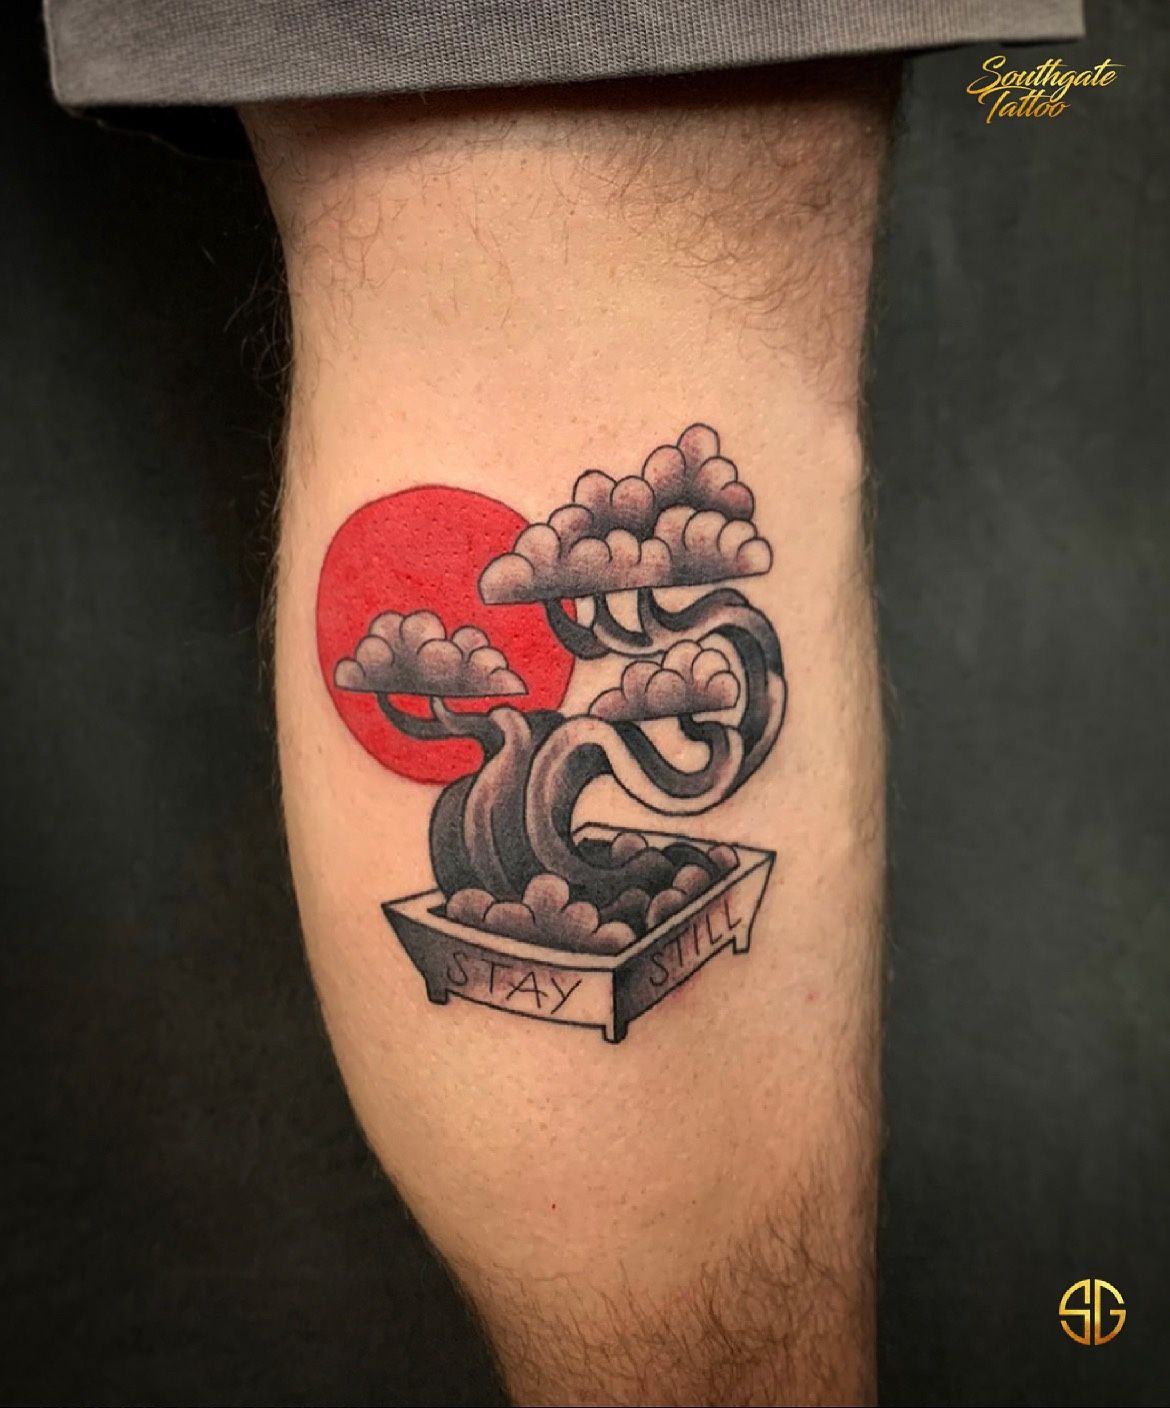 Tattoo uploaded by Mariana Groning • Bonsai tree tattoo, tatuaje de arbol  bonsai #tattoo #watercolor #tattoodo #marianagroning #tatuaje #ink #inked  #tattooed #colortattoo #acuarela #mexico #cdmx #MexicoCity #mexicoink  #karmatattoo #bonsai #bonsaitree ...